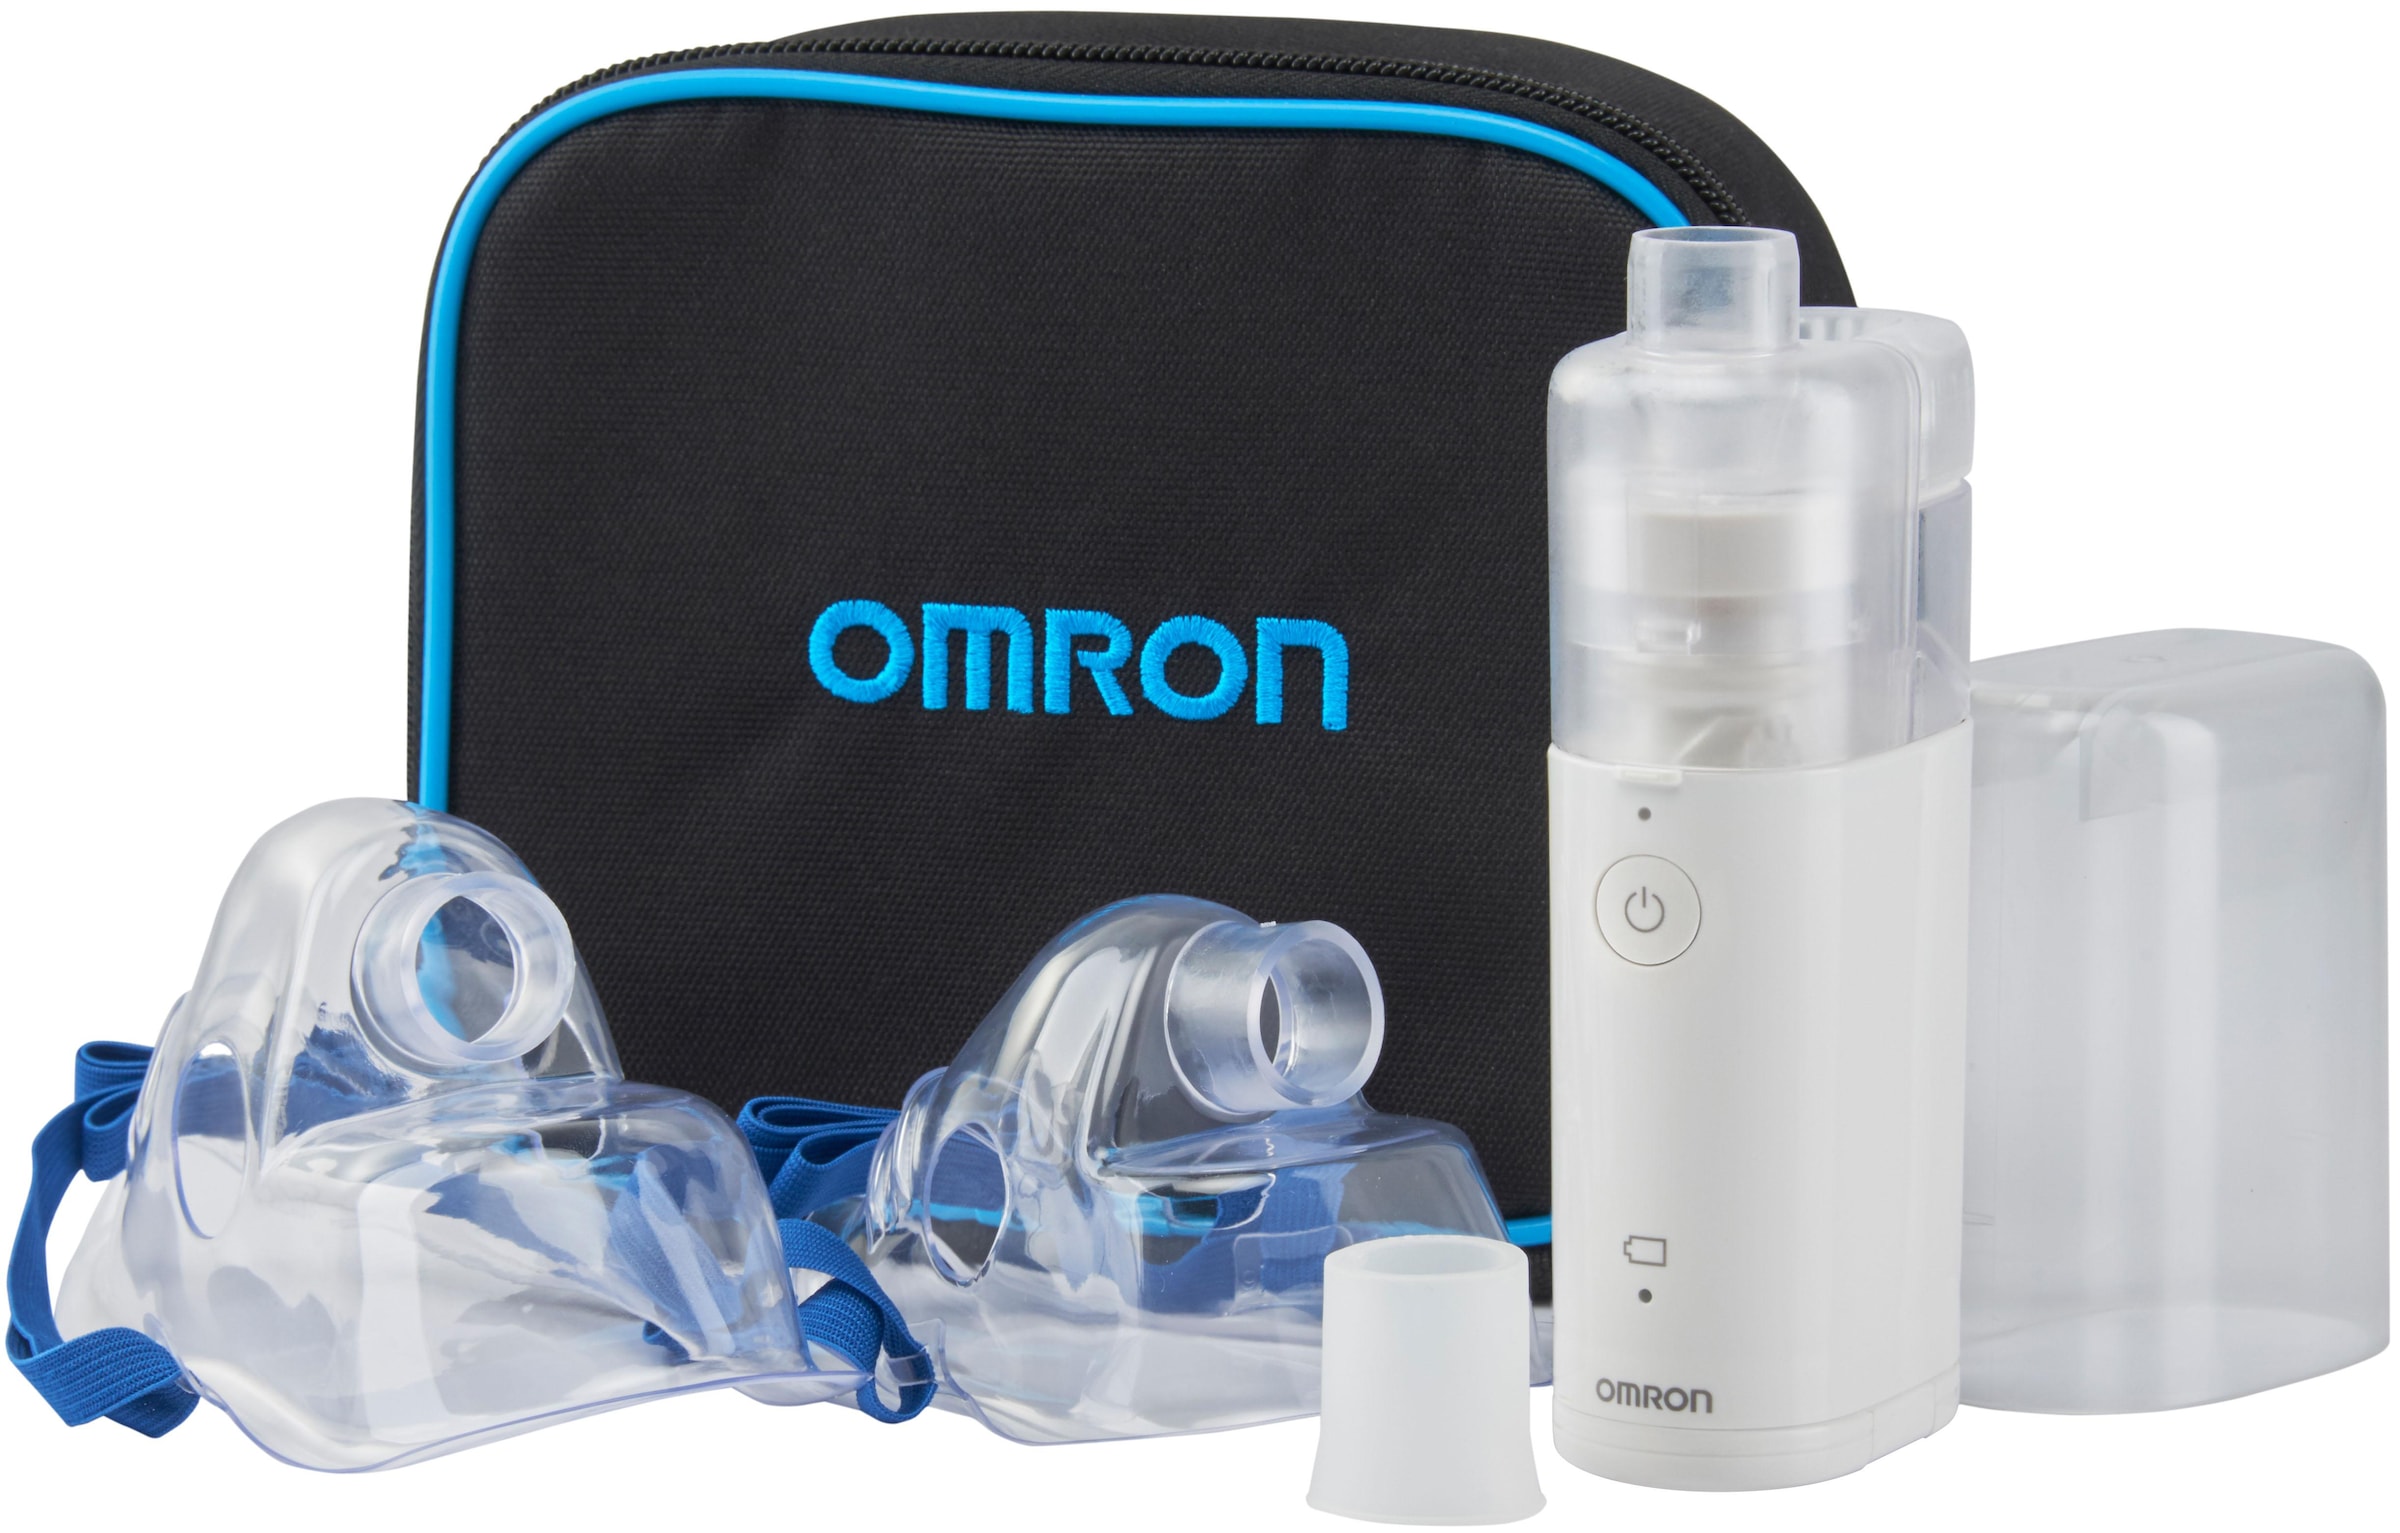 Inhalator von Omron